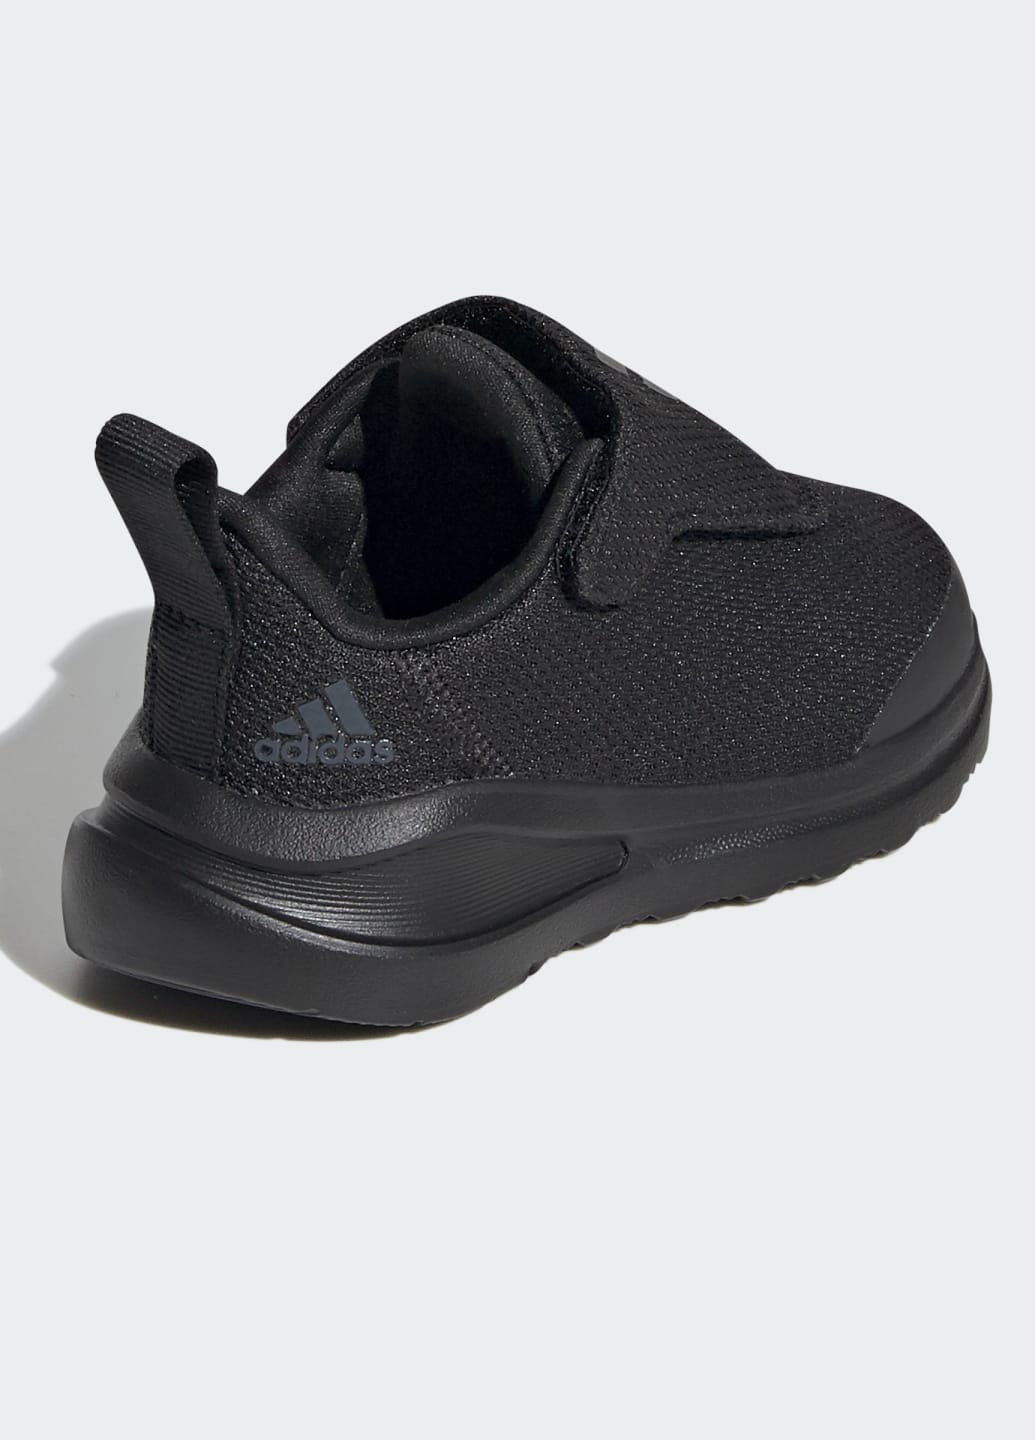 Черные всесезонные кроссовки fortarun ac adidas